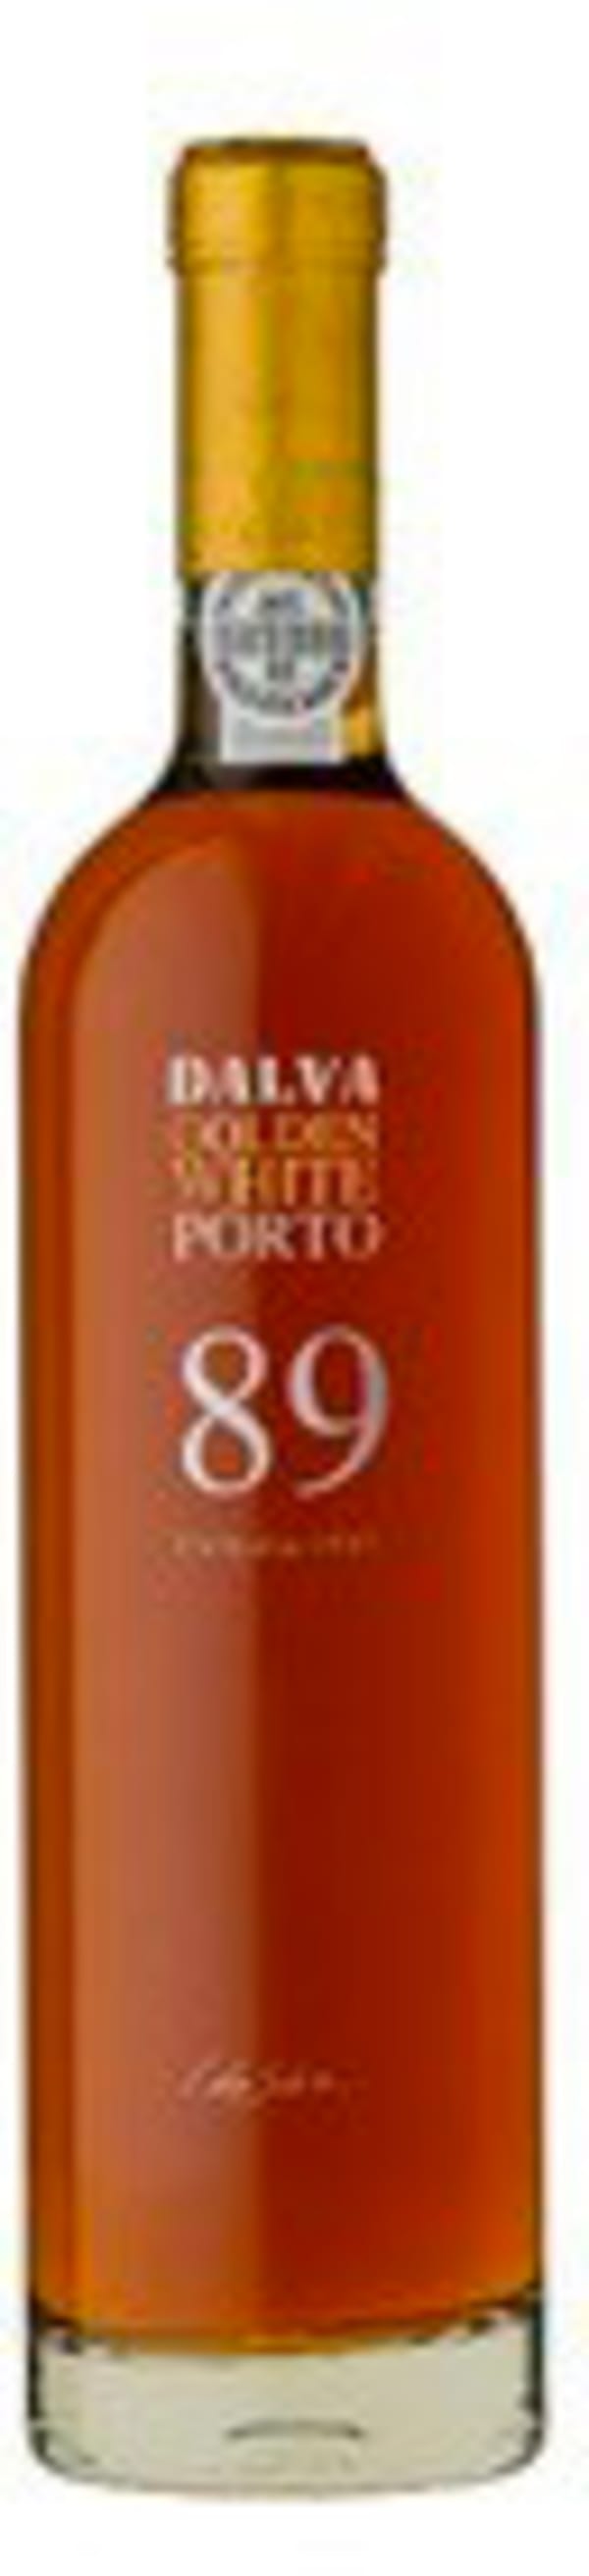 Dalva Colheita Golden White Port 1989